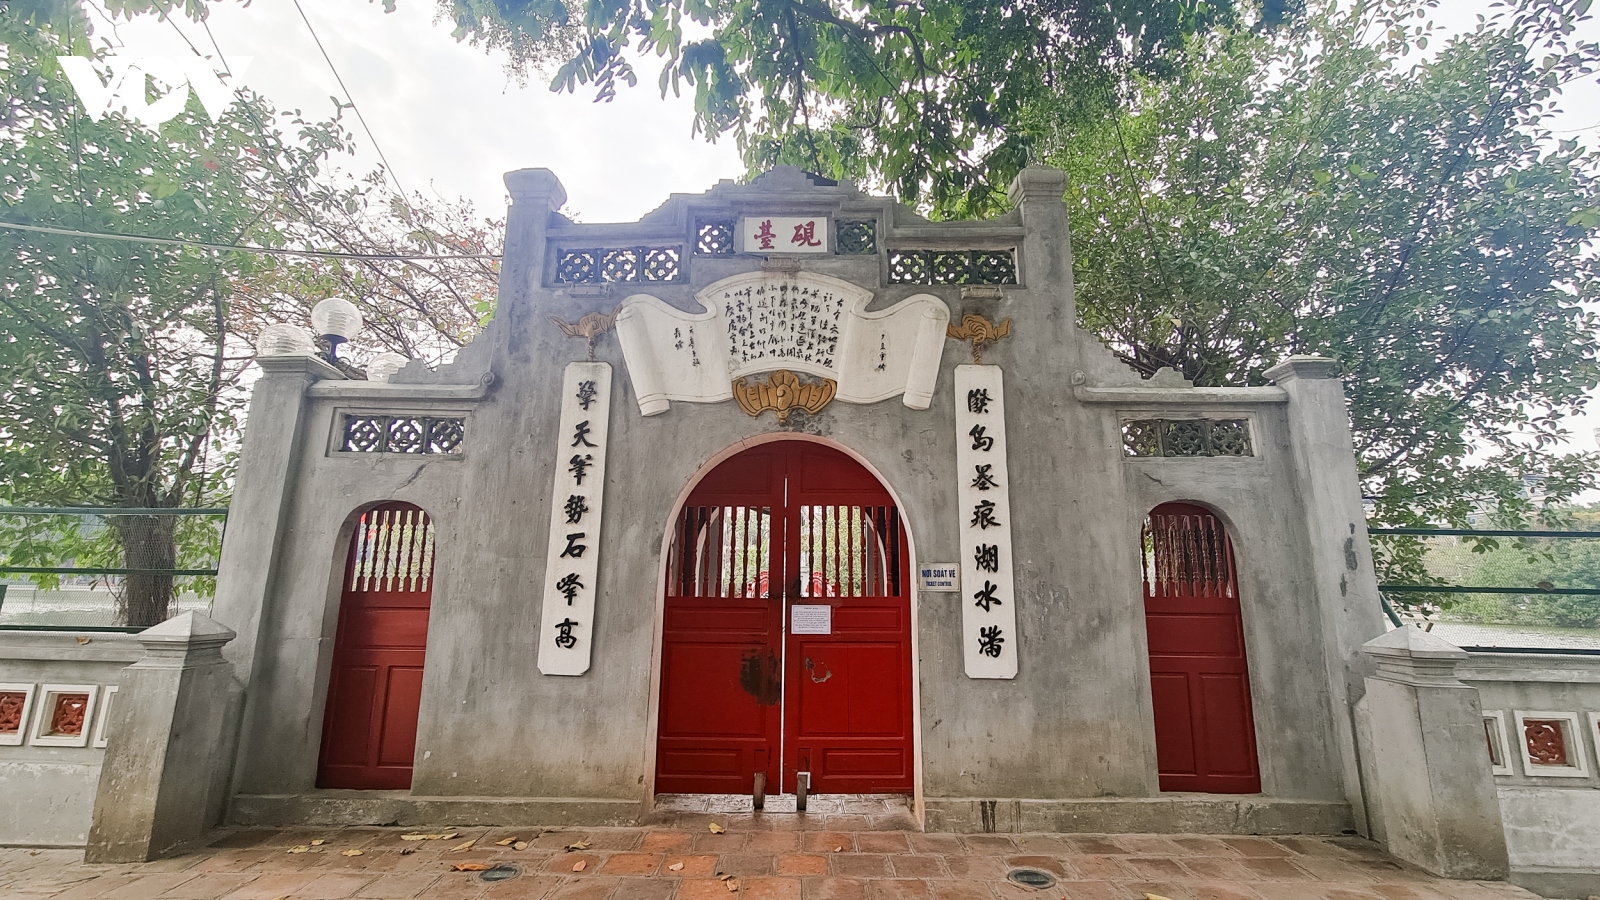 Đền chùa ở Hà Nội "cửa đóng, then cài", vắng lặng trong ngày đầu đi làm sau Tết